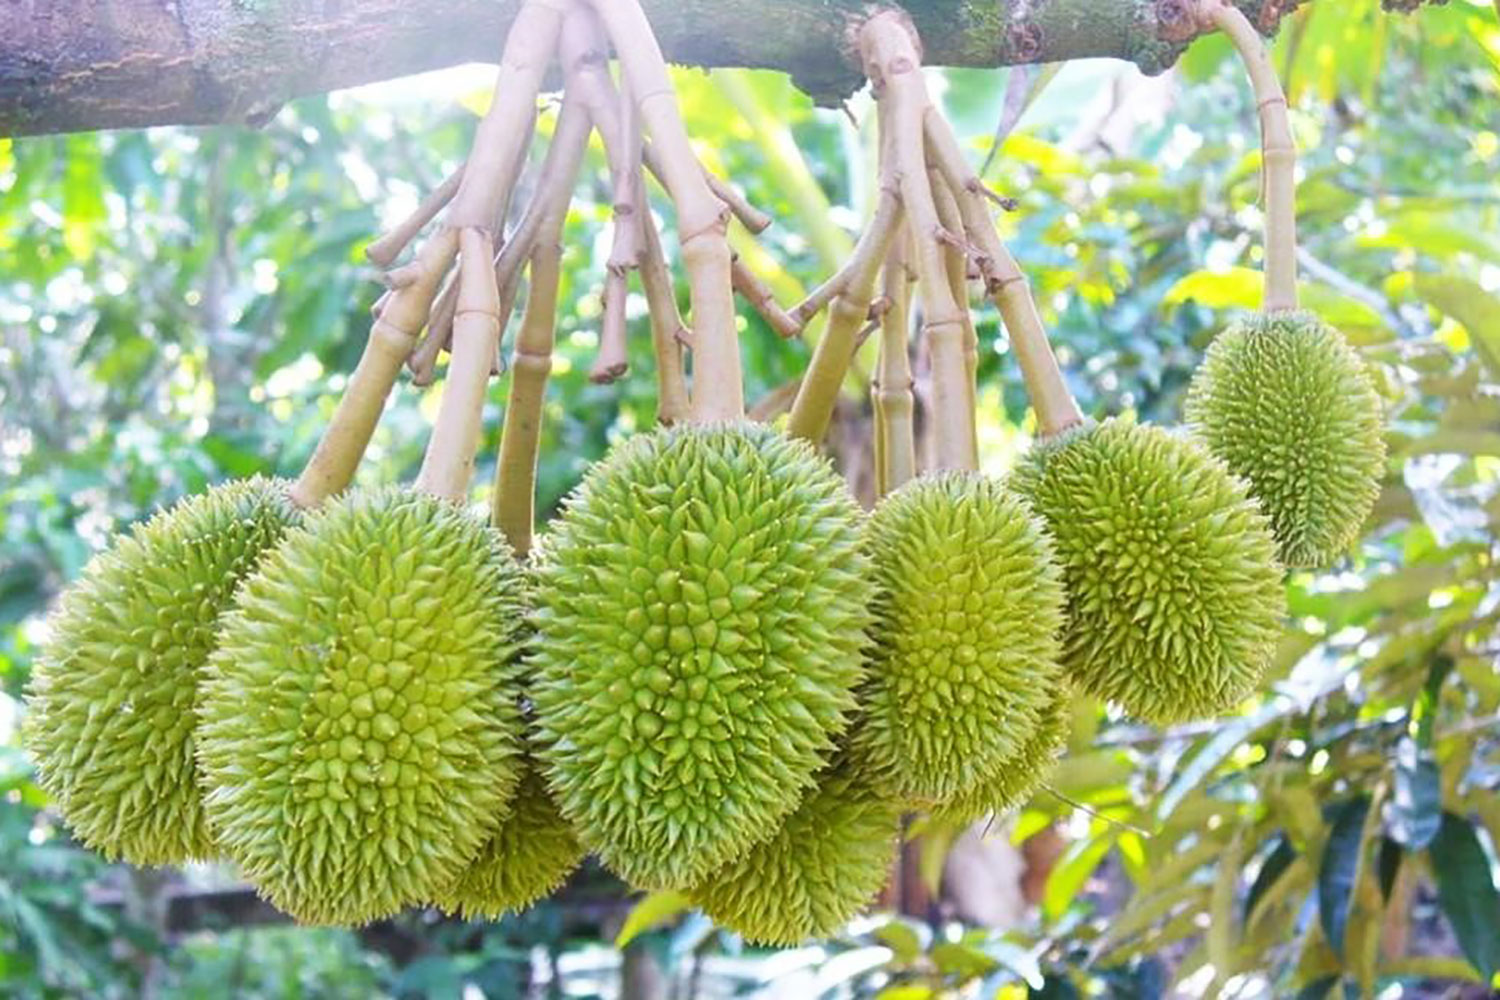 Danh sách top các vườn trái cây Tiền Giang đáng tham quan nhất 4